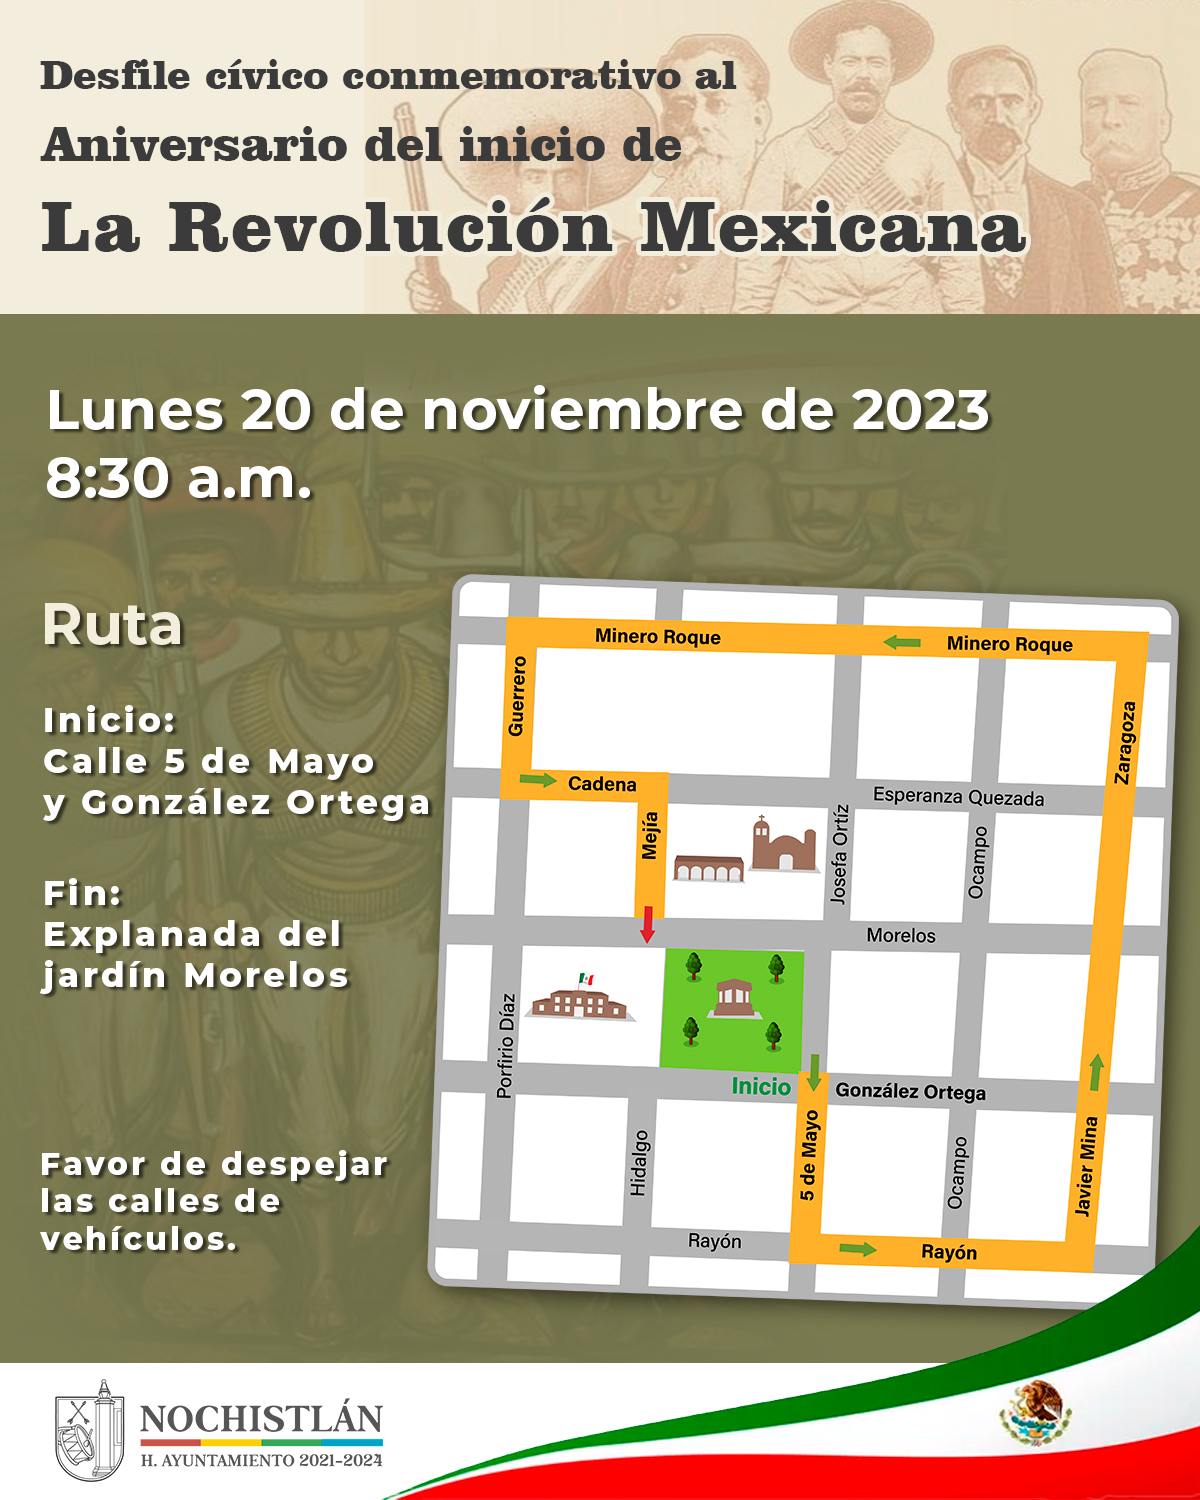 Ruta del desfile conmemorativo de la revolución mexicana.